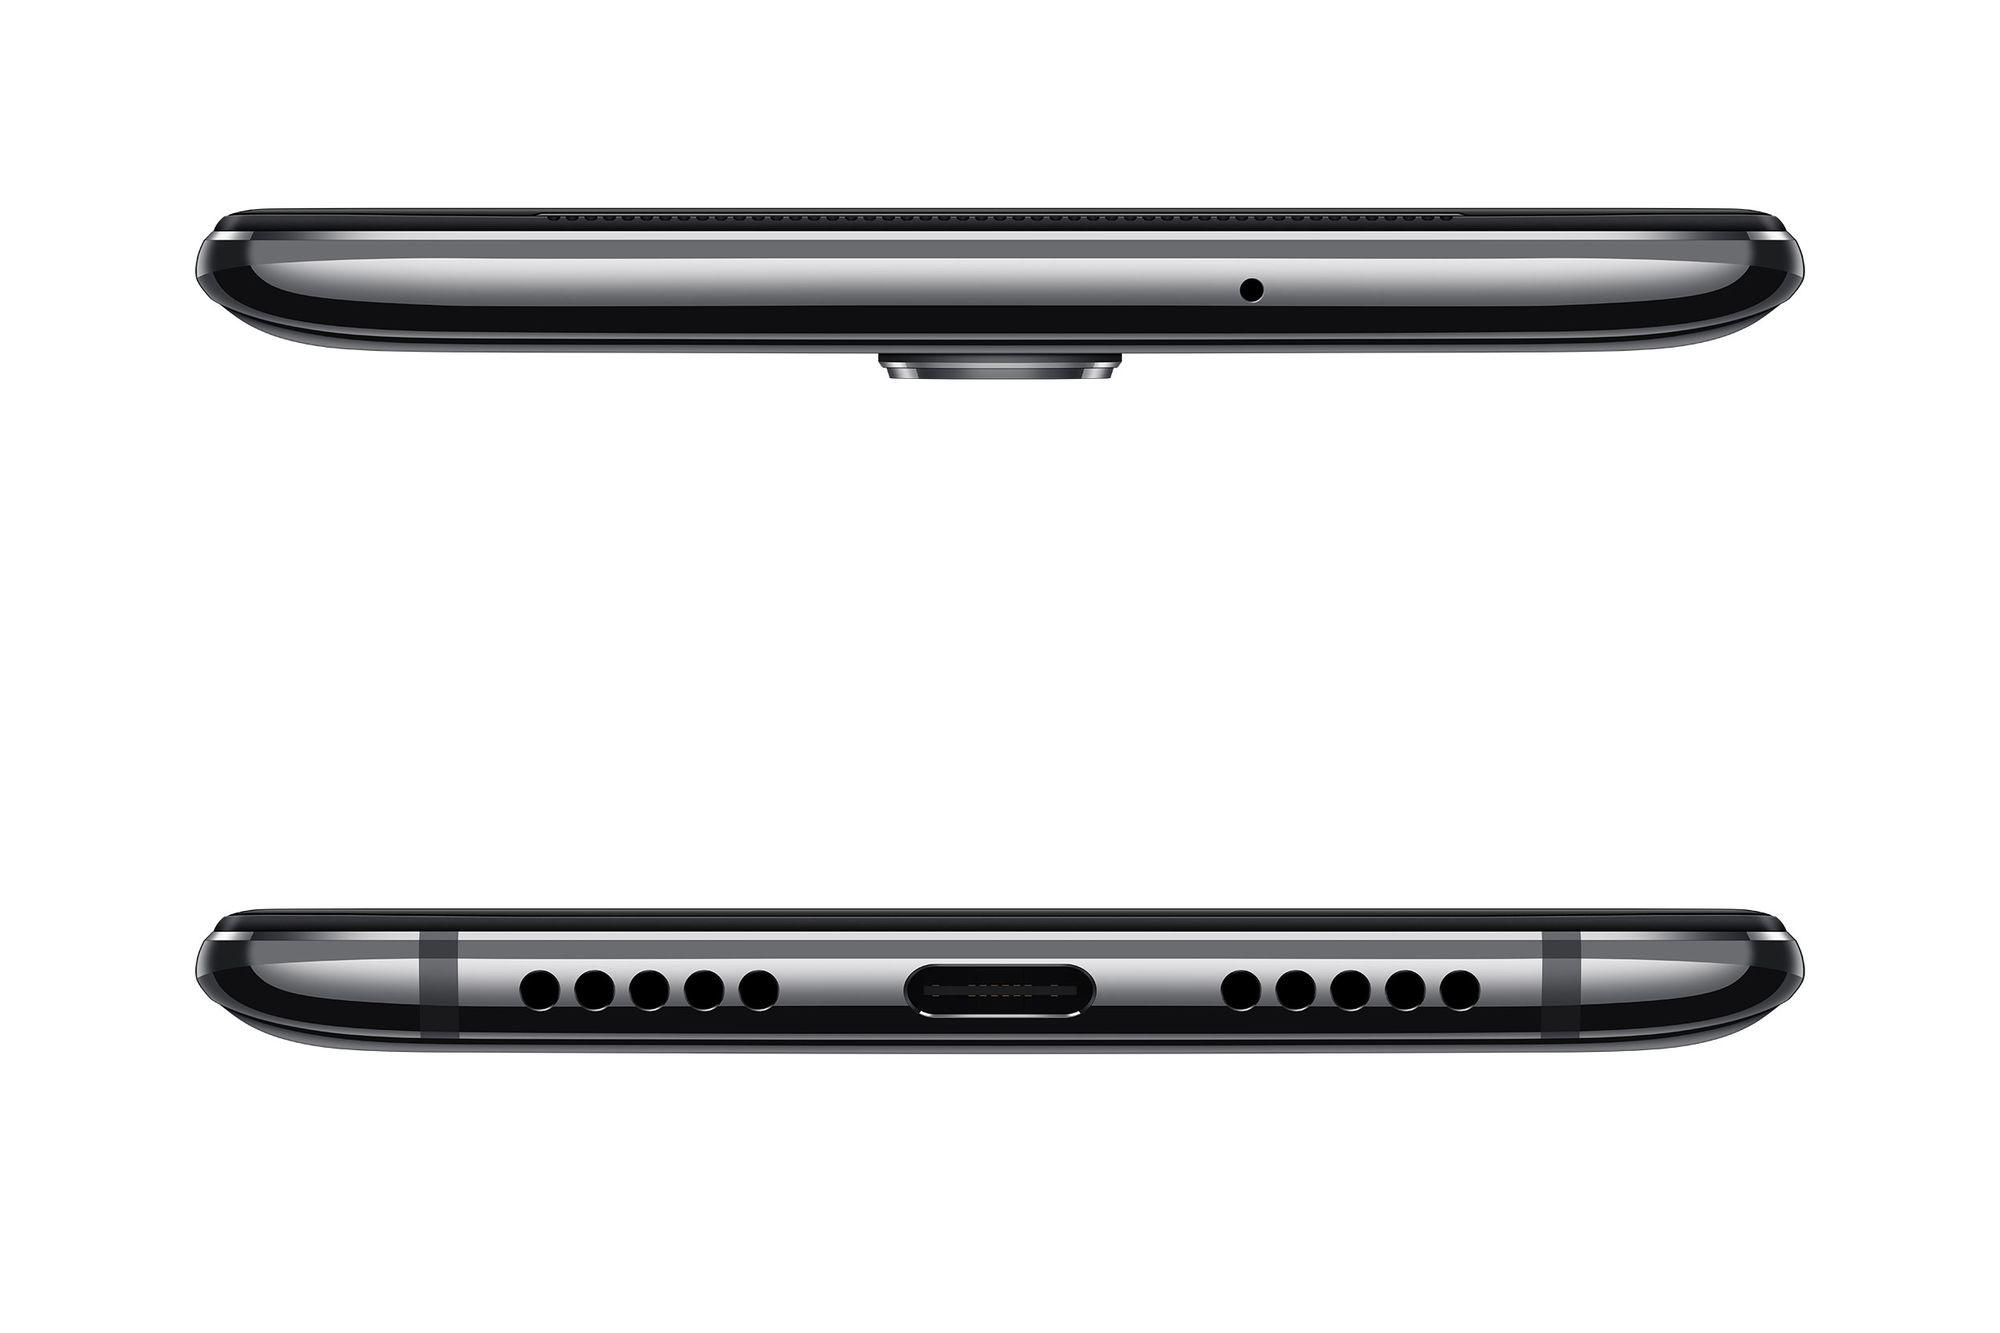 Zo zien de OnePlus 7 en 7 Pro er bovenaan en onderaan uit.